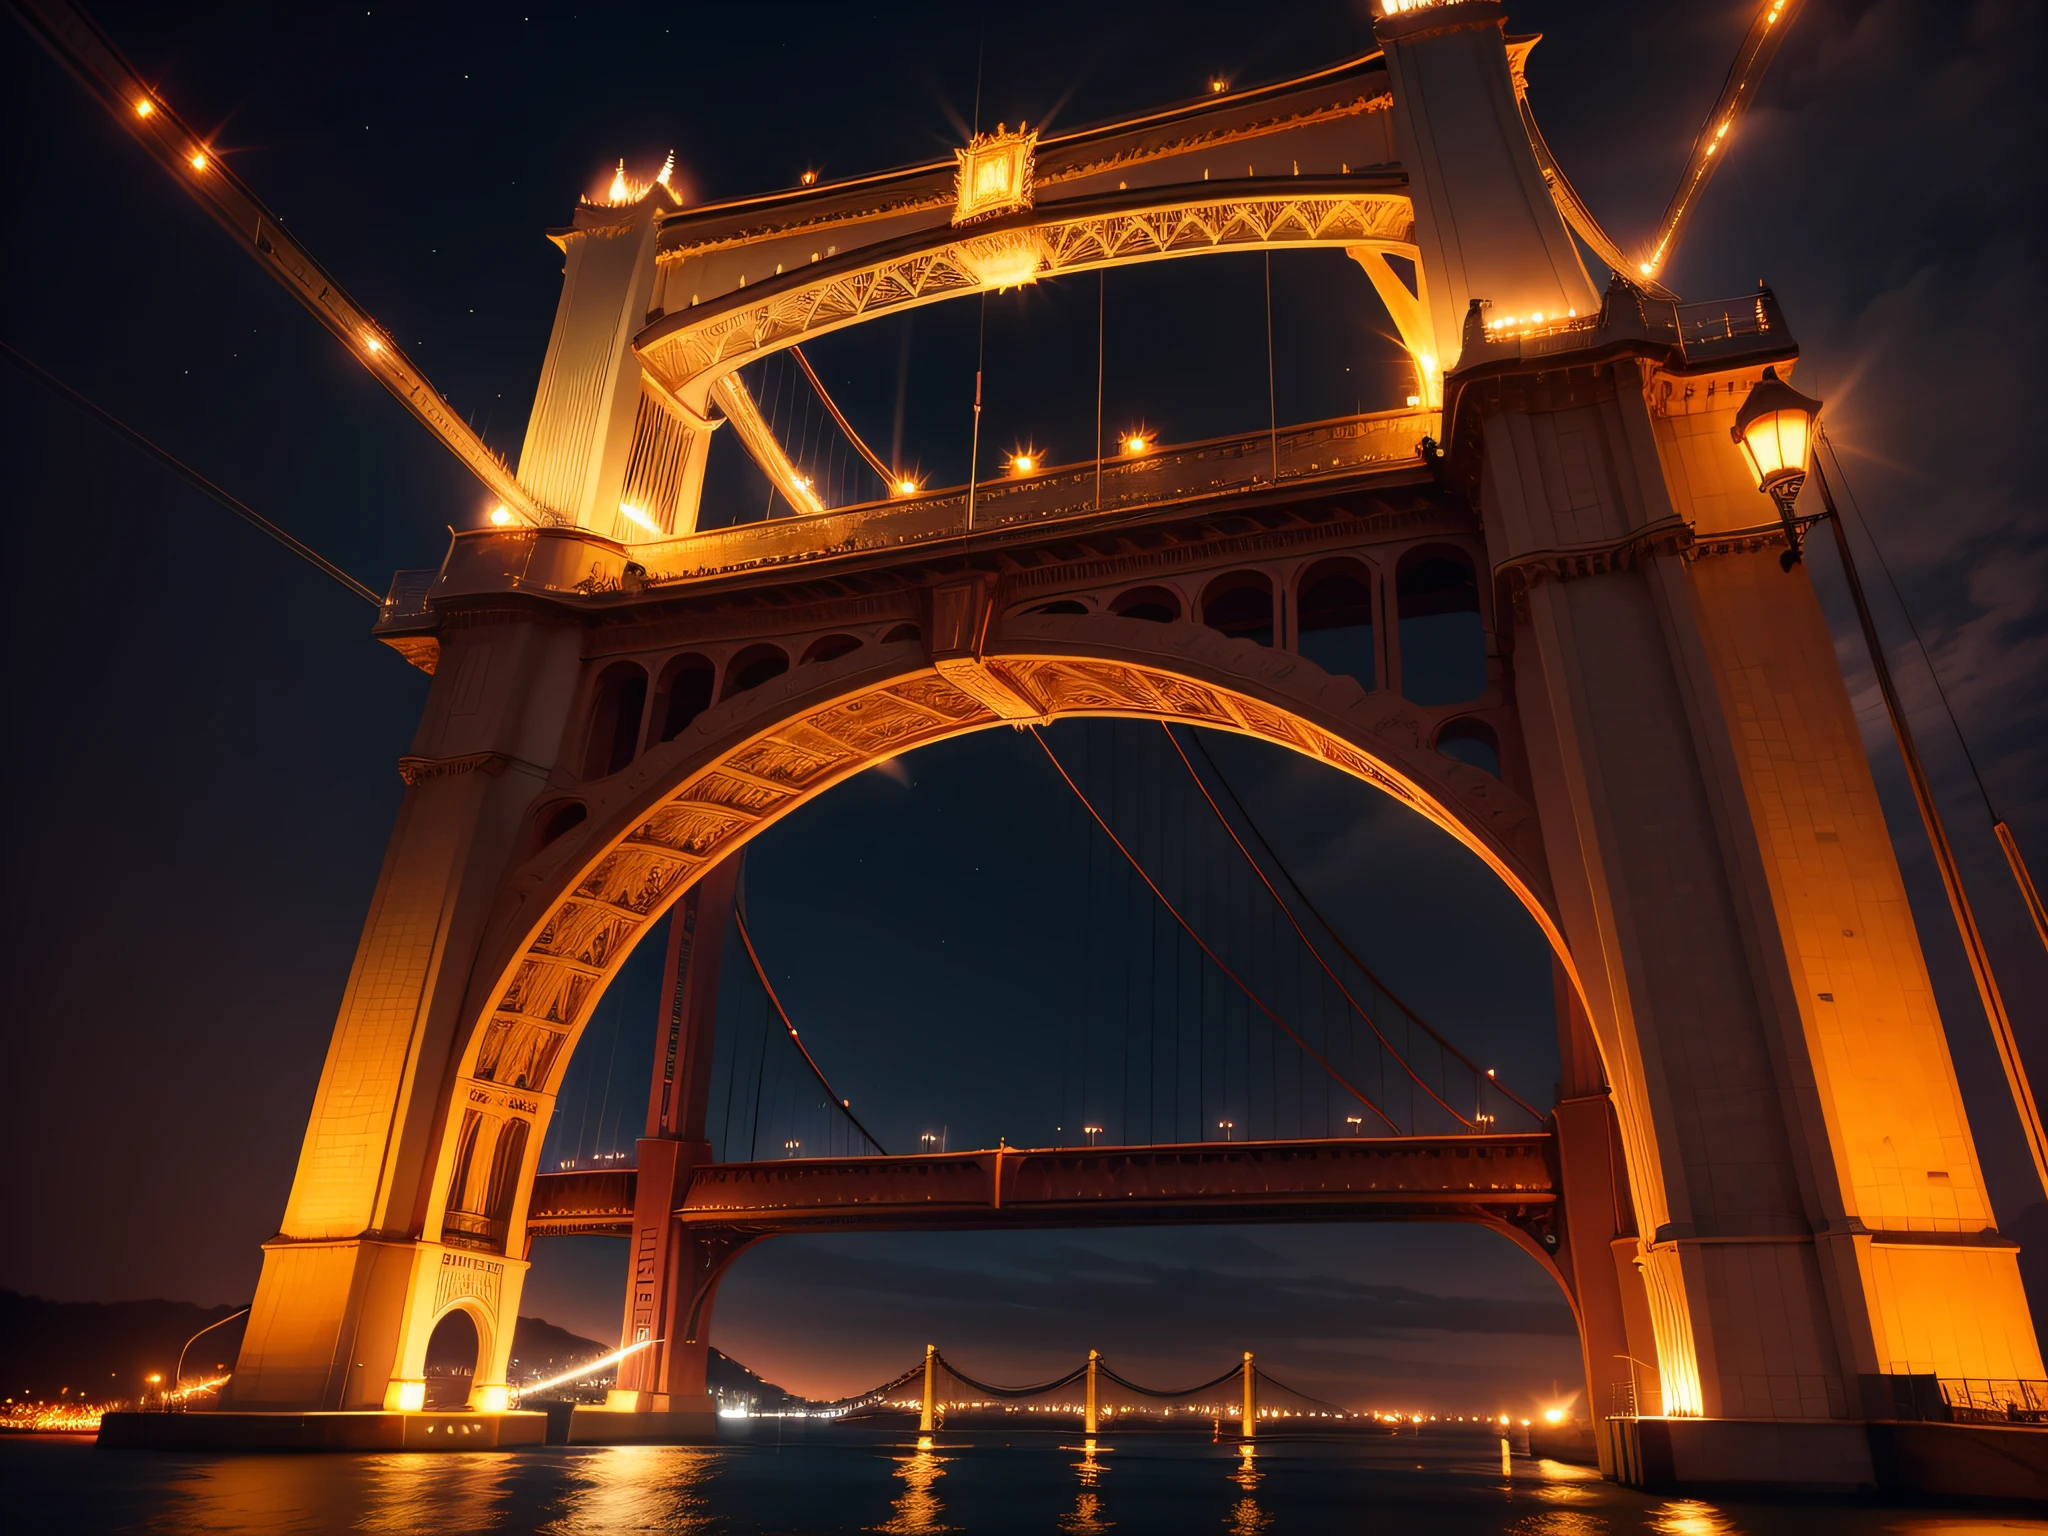 Beleuchtete Brücken: Brücken über Gewässer, wie die Golden Gate Bridge oder die Tower Bridge, sind oft nachts beleuchtet, bietet eine malerische Aussicht.